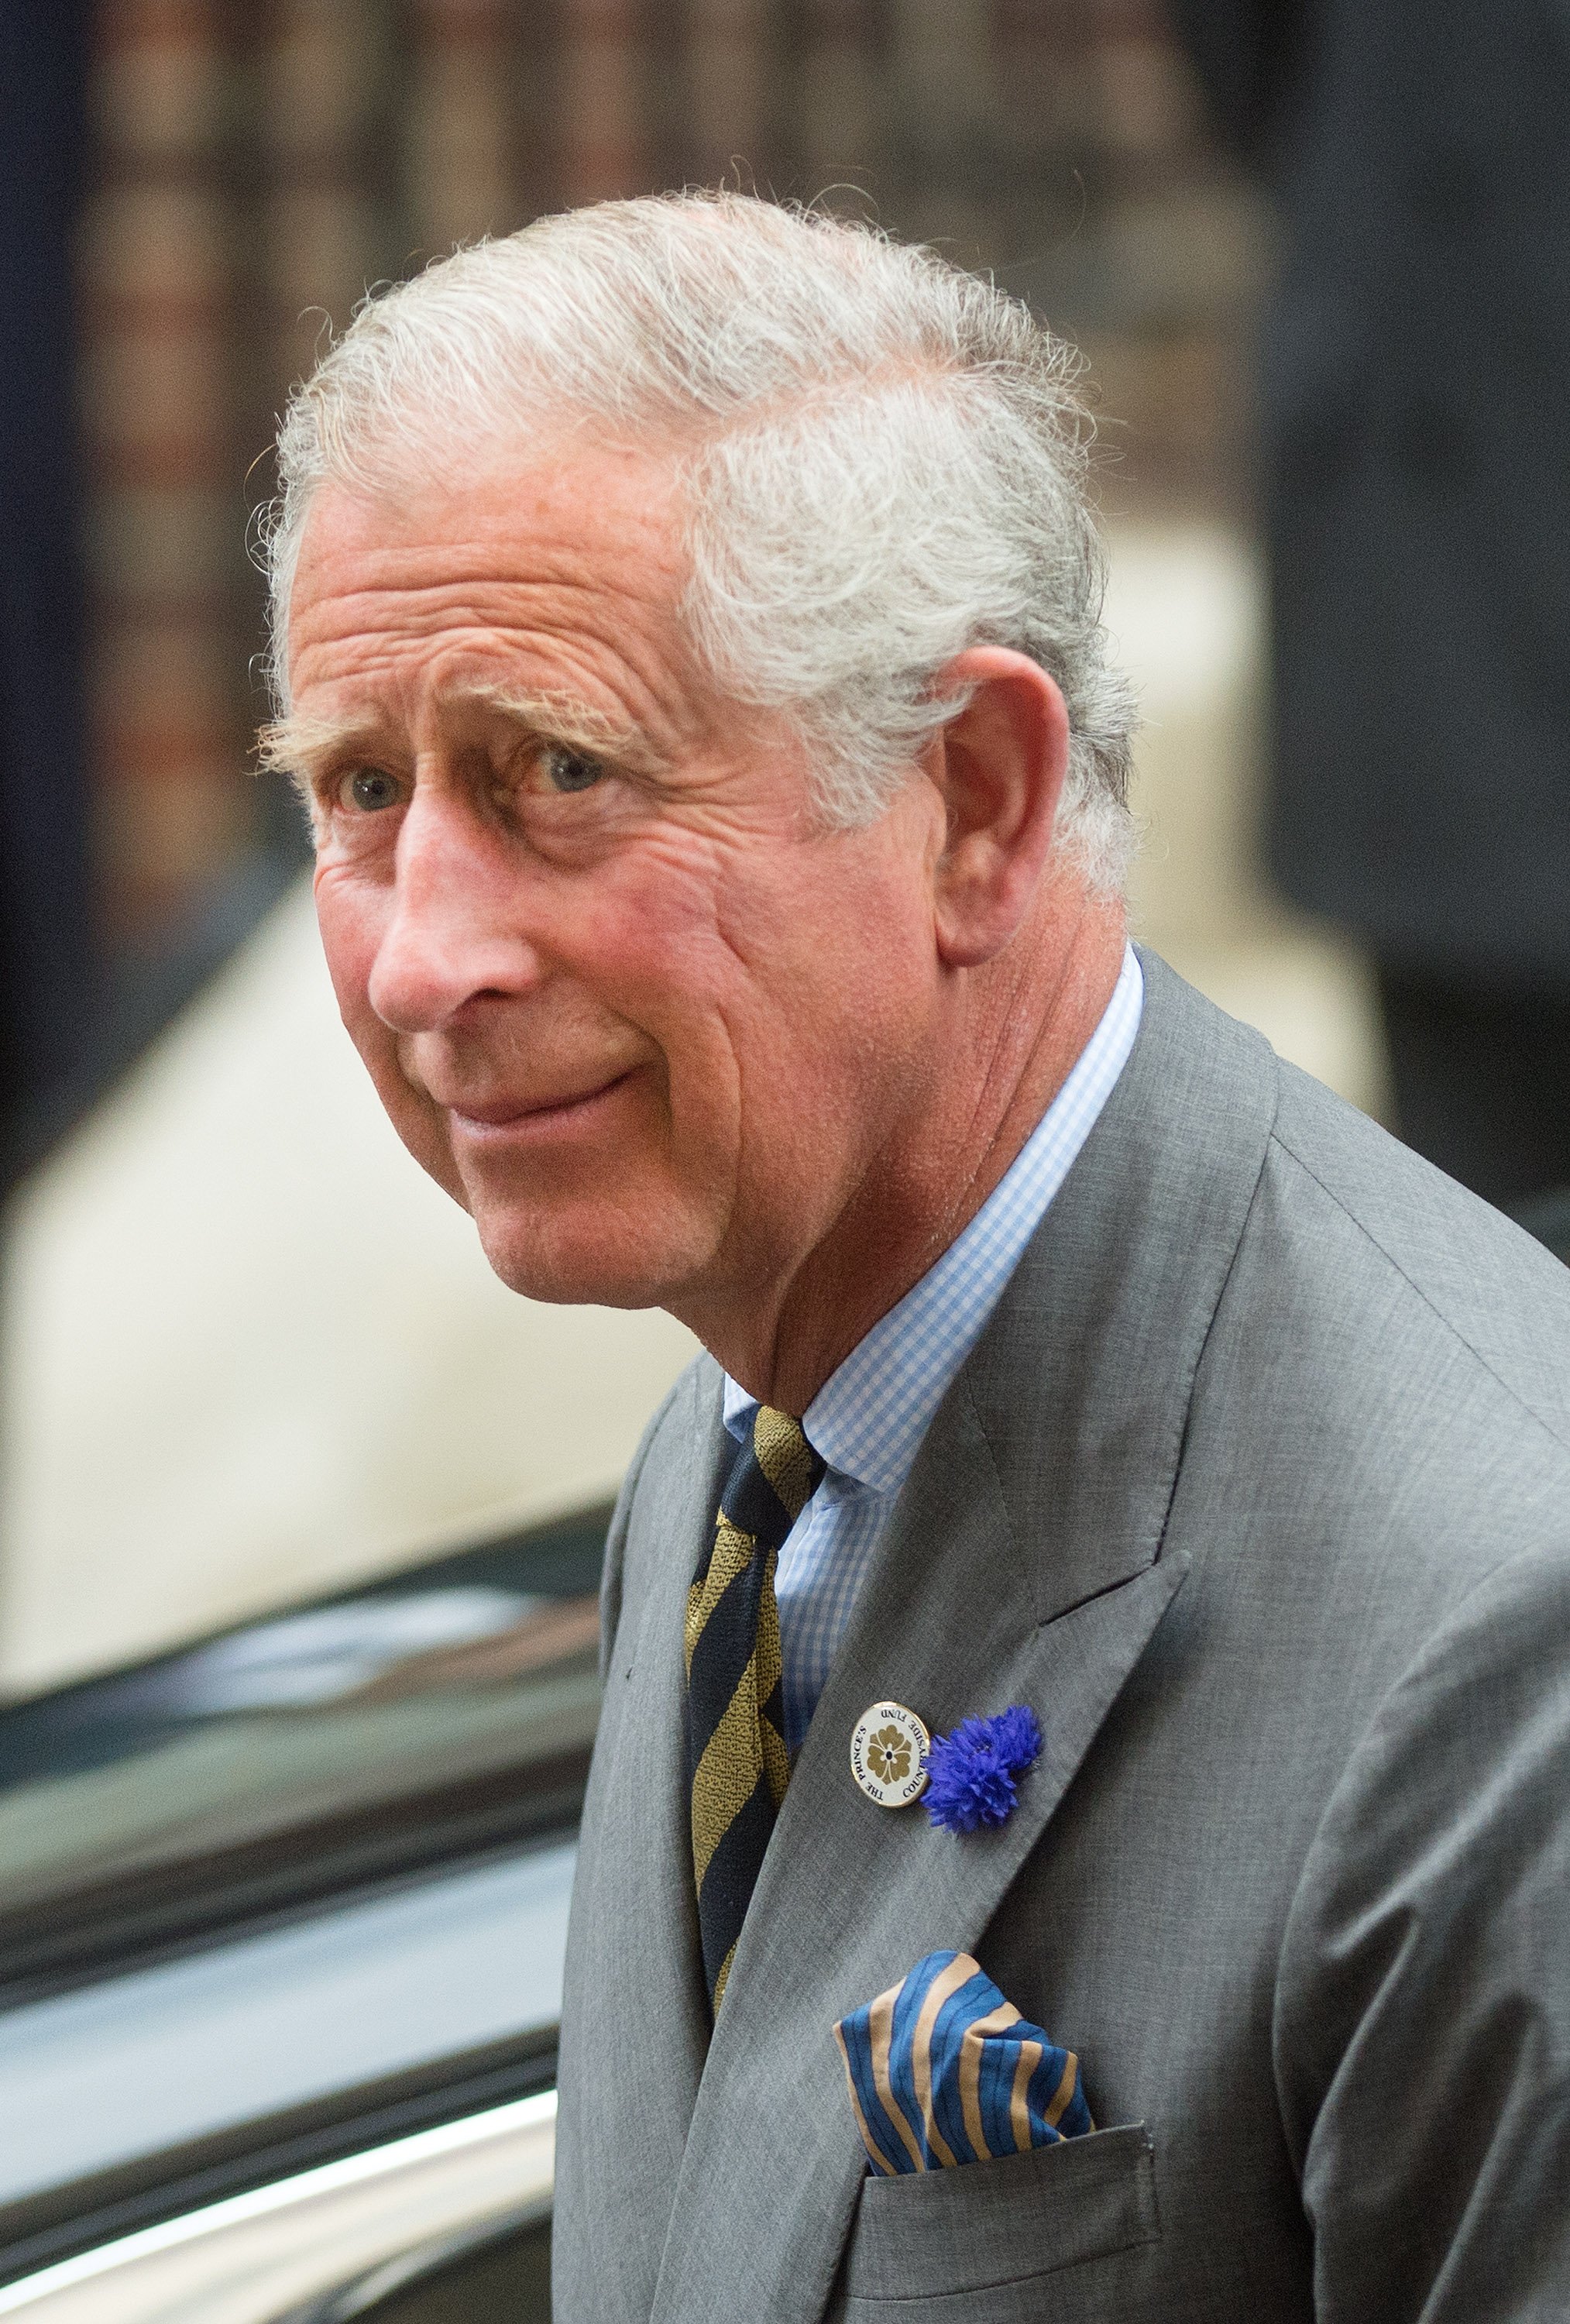 König Karl III. kommt am 23. Juli 2013 in London, England, um Catherine, Herzogin von Cambridge, Prinz William, Herzog von Cambridge, und ihren neugeborenen Sohn in der Lindo-Abteilung des St. Mary's Hospital zu sehen. | Quelle: Getty Images